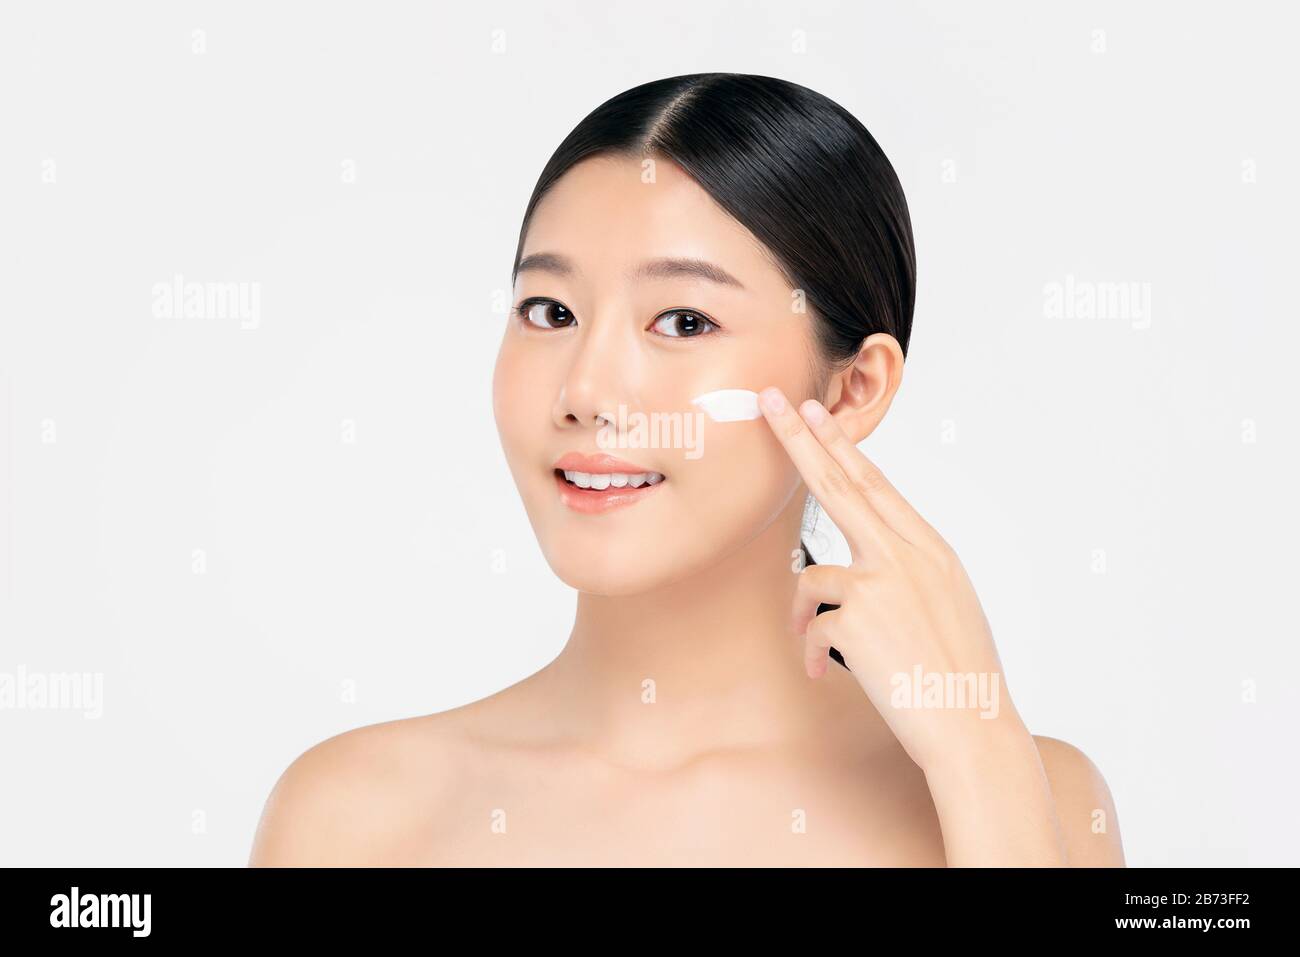 Junge, schöne asiatische Frau mit frischen, sauberen Aussehen, die Creme auf ein Gesicht auftragen, das auf weißem Hintergrund für Schönheits- und Hautpflegekonzepte isoliert ist Stockfoto